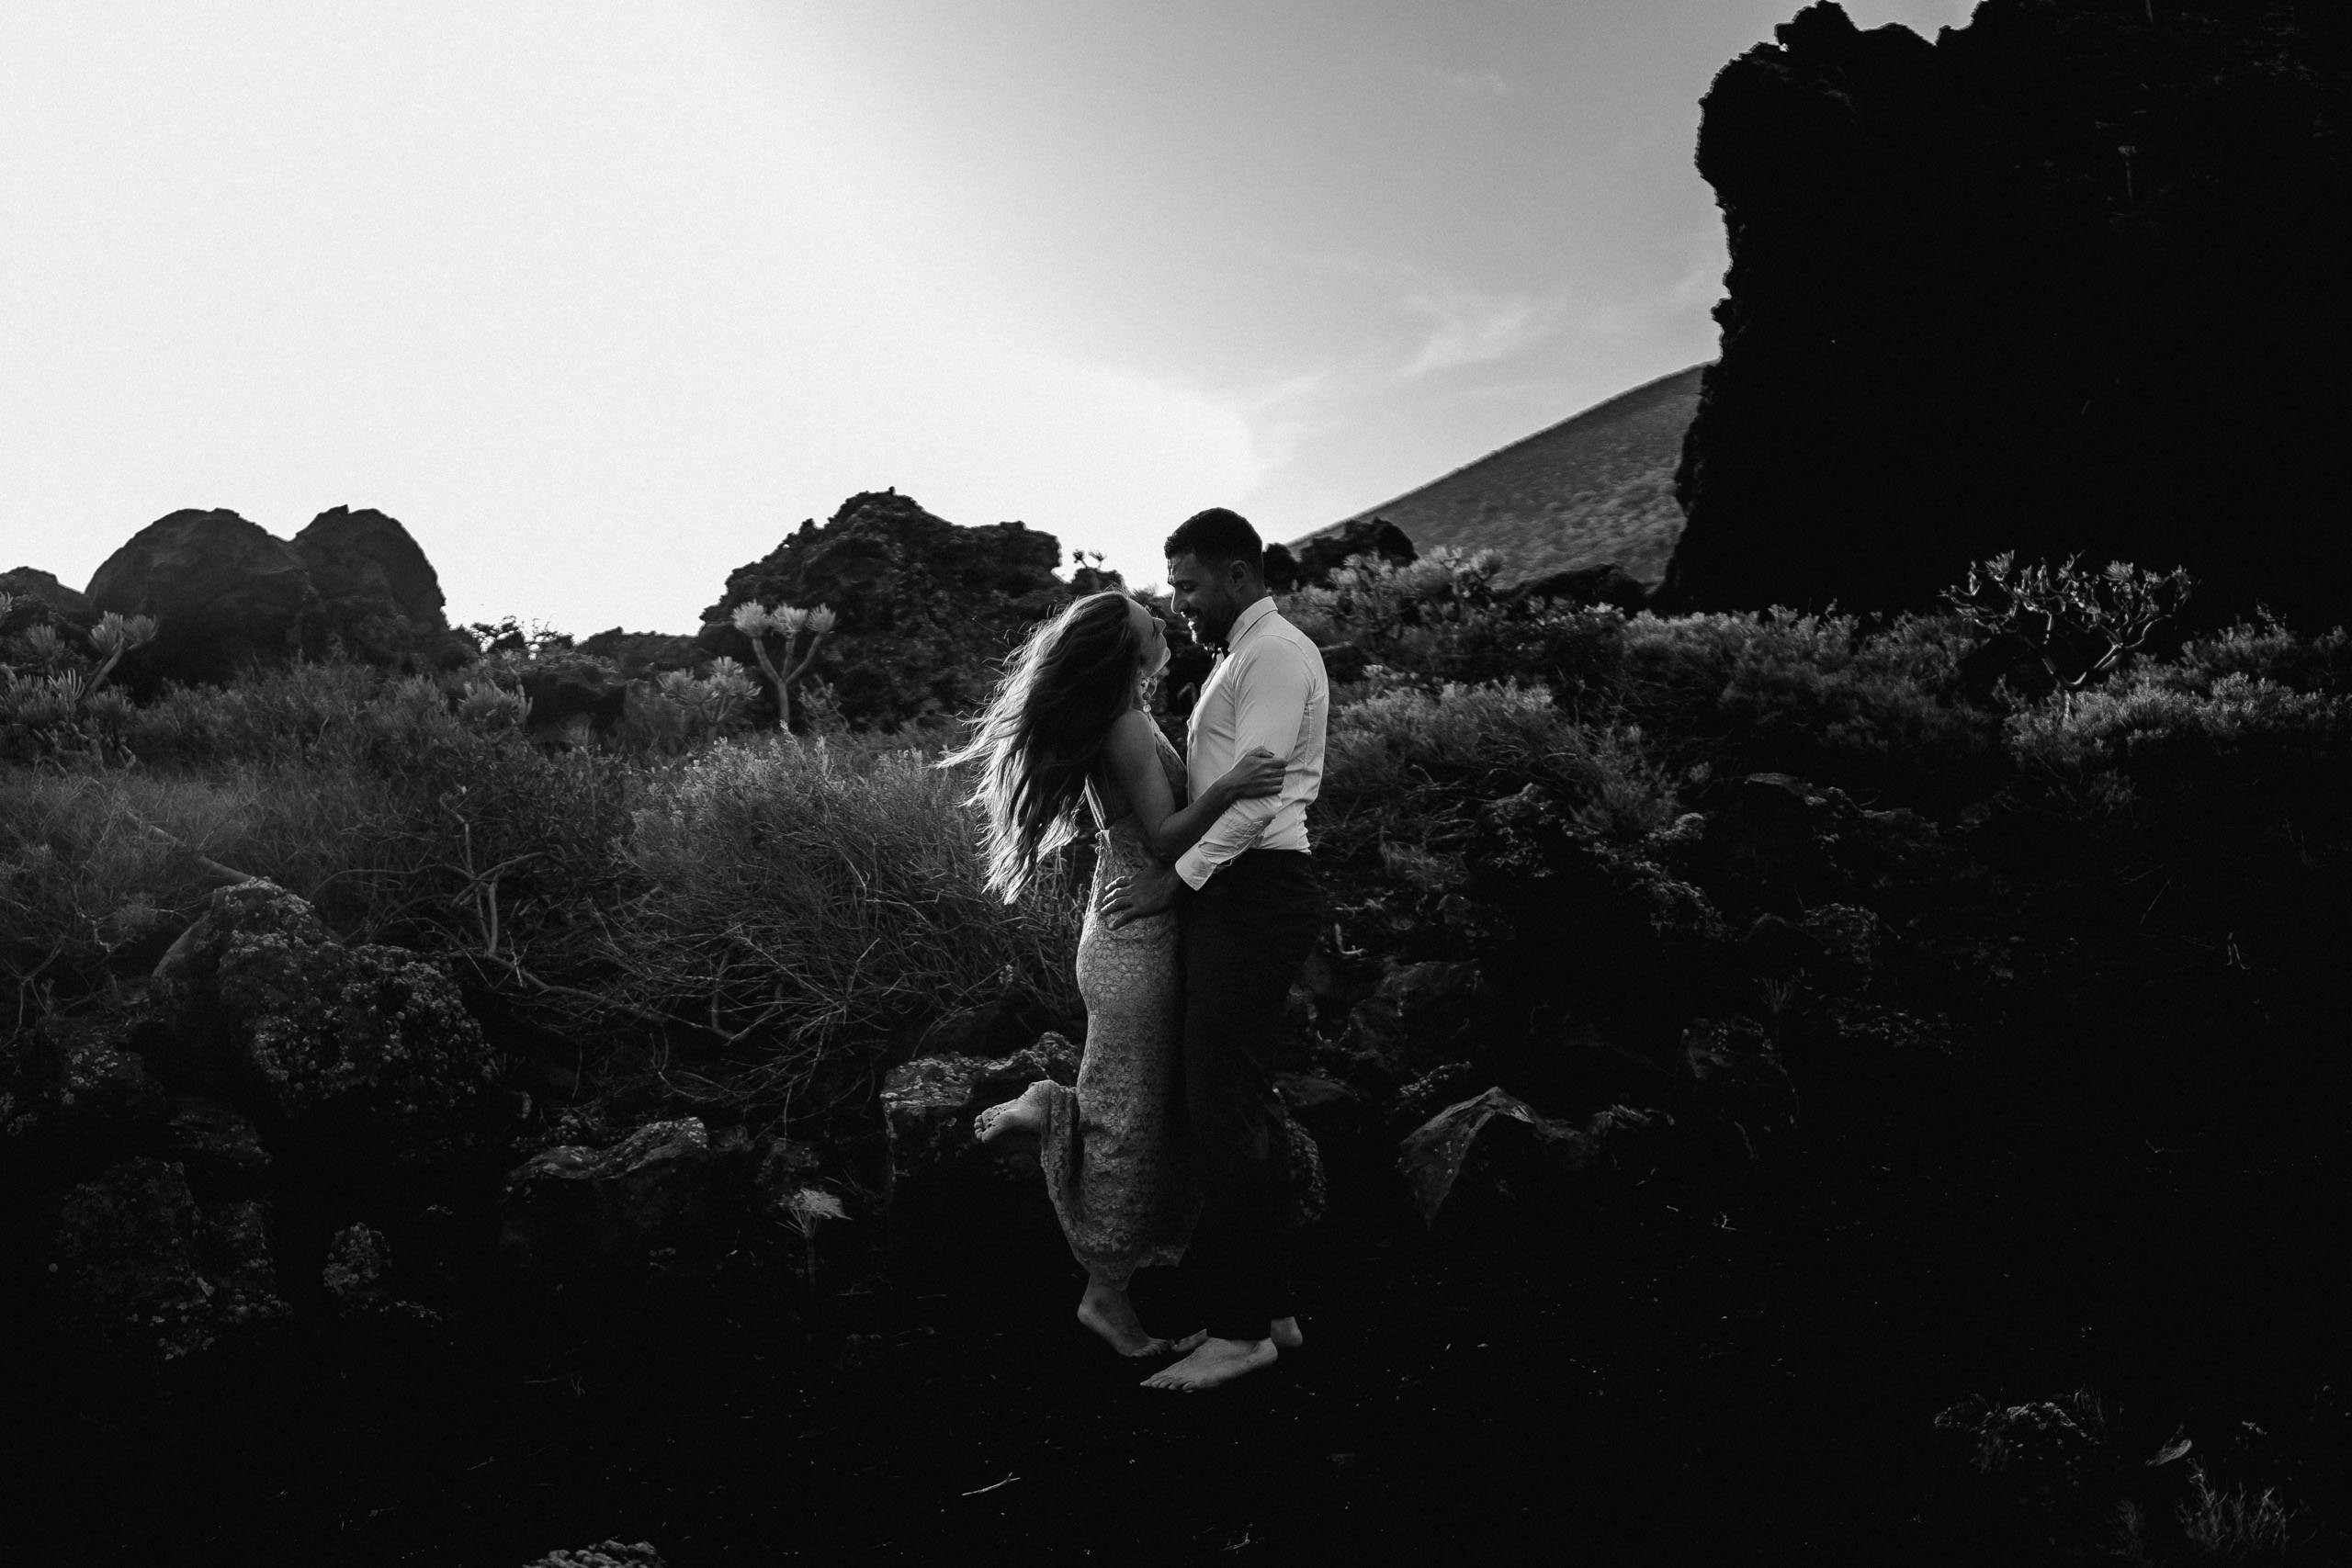 Aida + Tim | Hochzeitsfotografen am Bodensee Patricia & Gustavo - La Palma, Spanien  - Hochzeitsfotografie von Aida und Tim